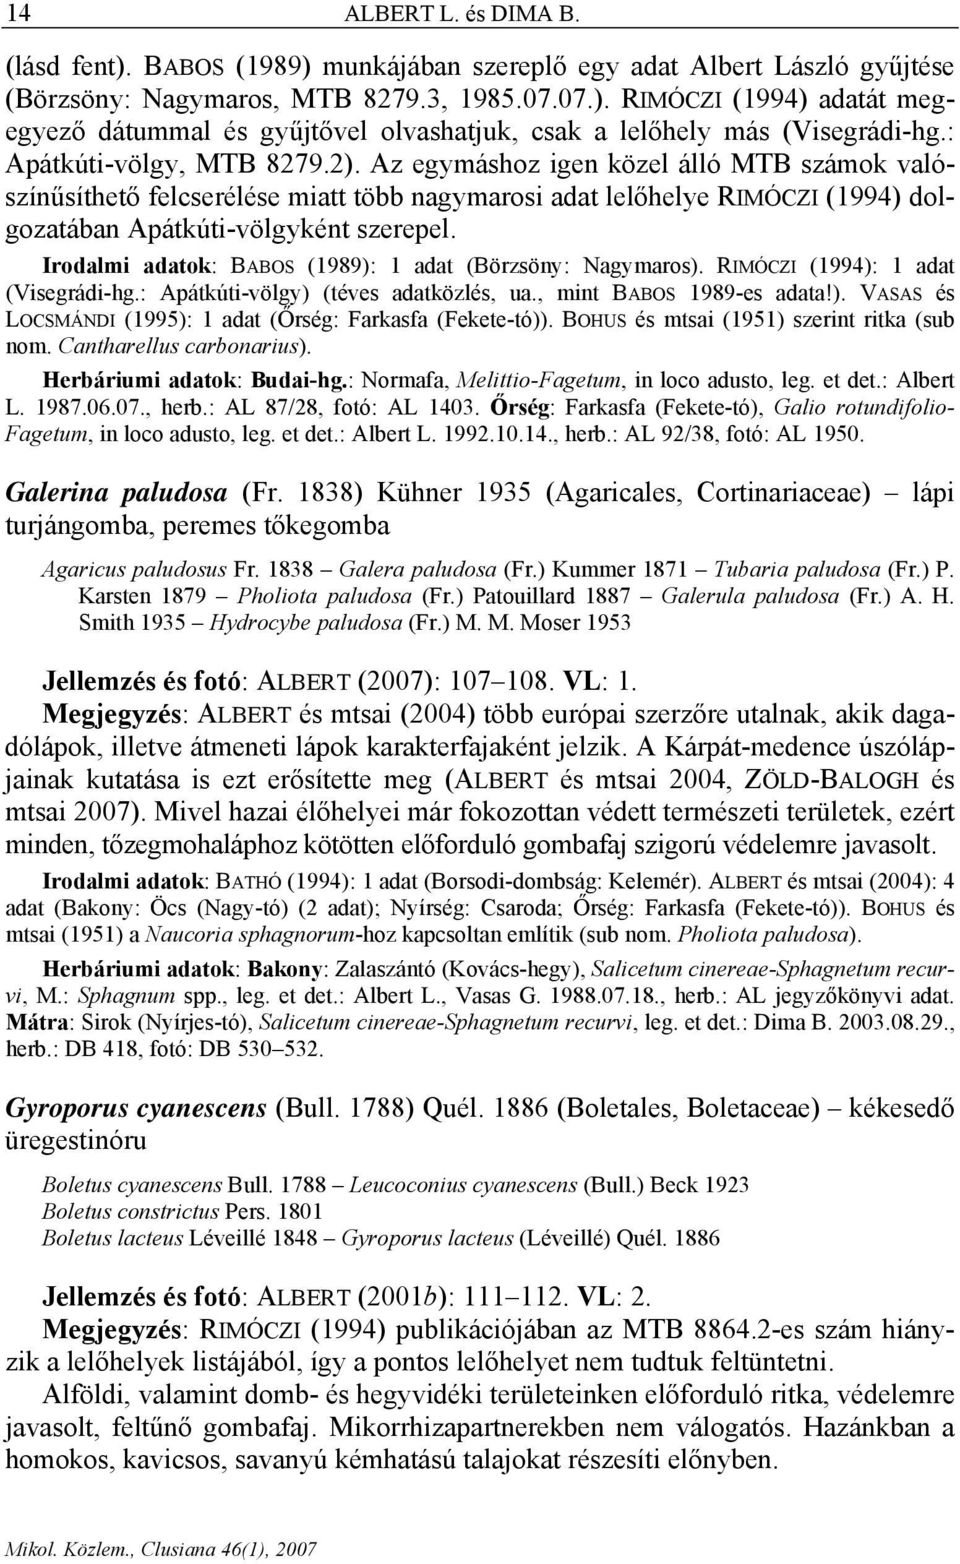 Irodalmi adatok: BABOS (1989): 1 adat (Börzsöny: Nagymaros). RIMÓCZI (1994): 1 adat (Visegrádi-hg.: Apátkúti-völgy) (téves adatközlés, ua., mint BABOS 1989-es adata!). VASAS és LOCSMÁNDI (1995): 1 adat (Őrség: Farkasfa (Fekete-tó)).